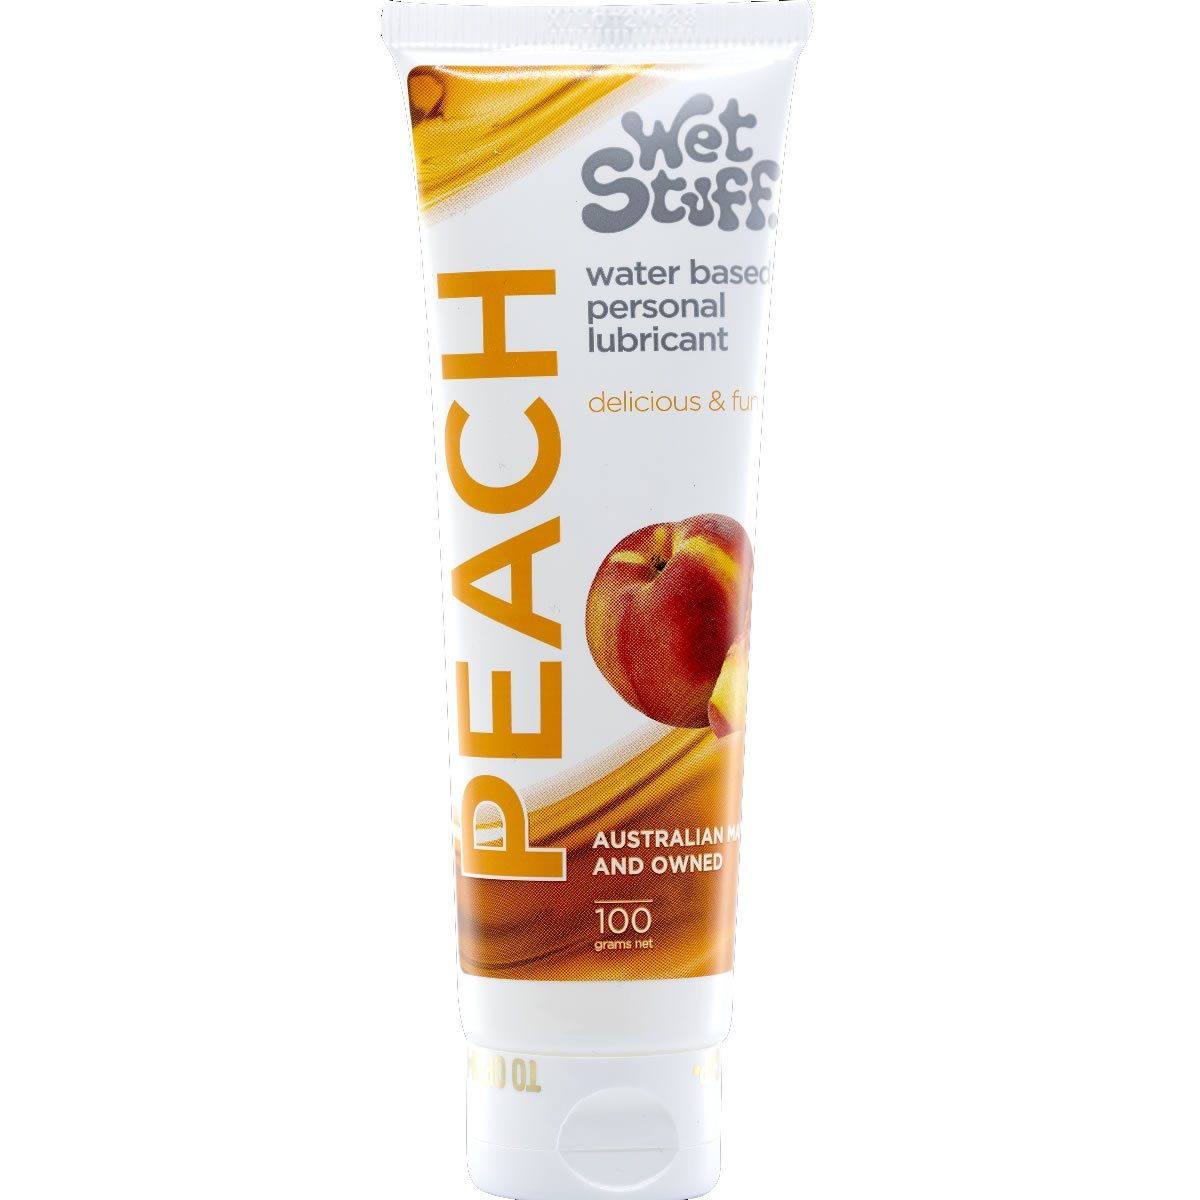 Tube mit fruchtig Stuff - Gleitgel & Peach aromatisiert, 100ml, Gleitgel Pfirsichgeschmack mit fruchtiges Wet